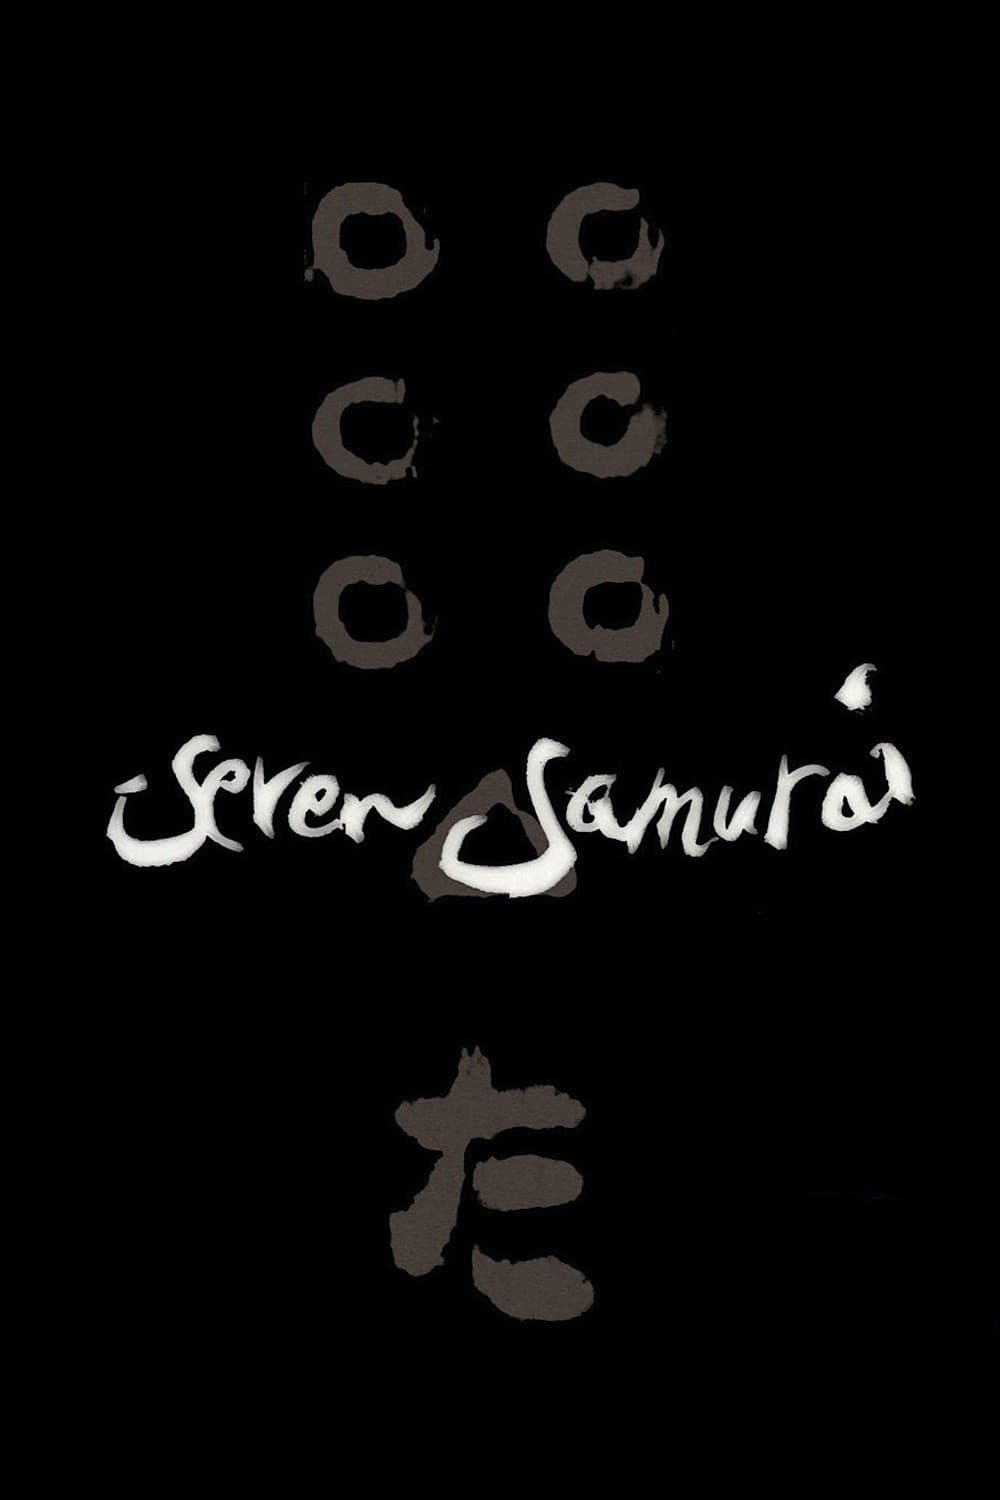 Poster for the movie "Seven Samurai"